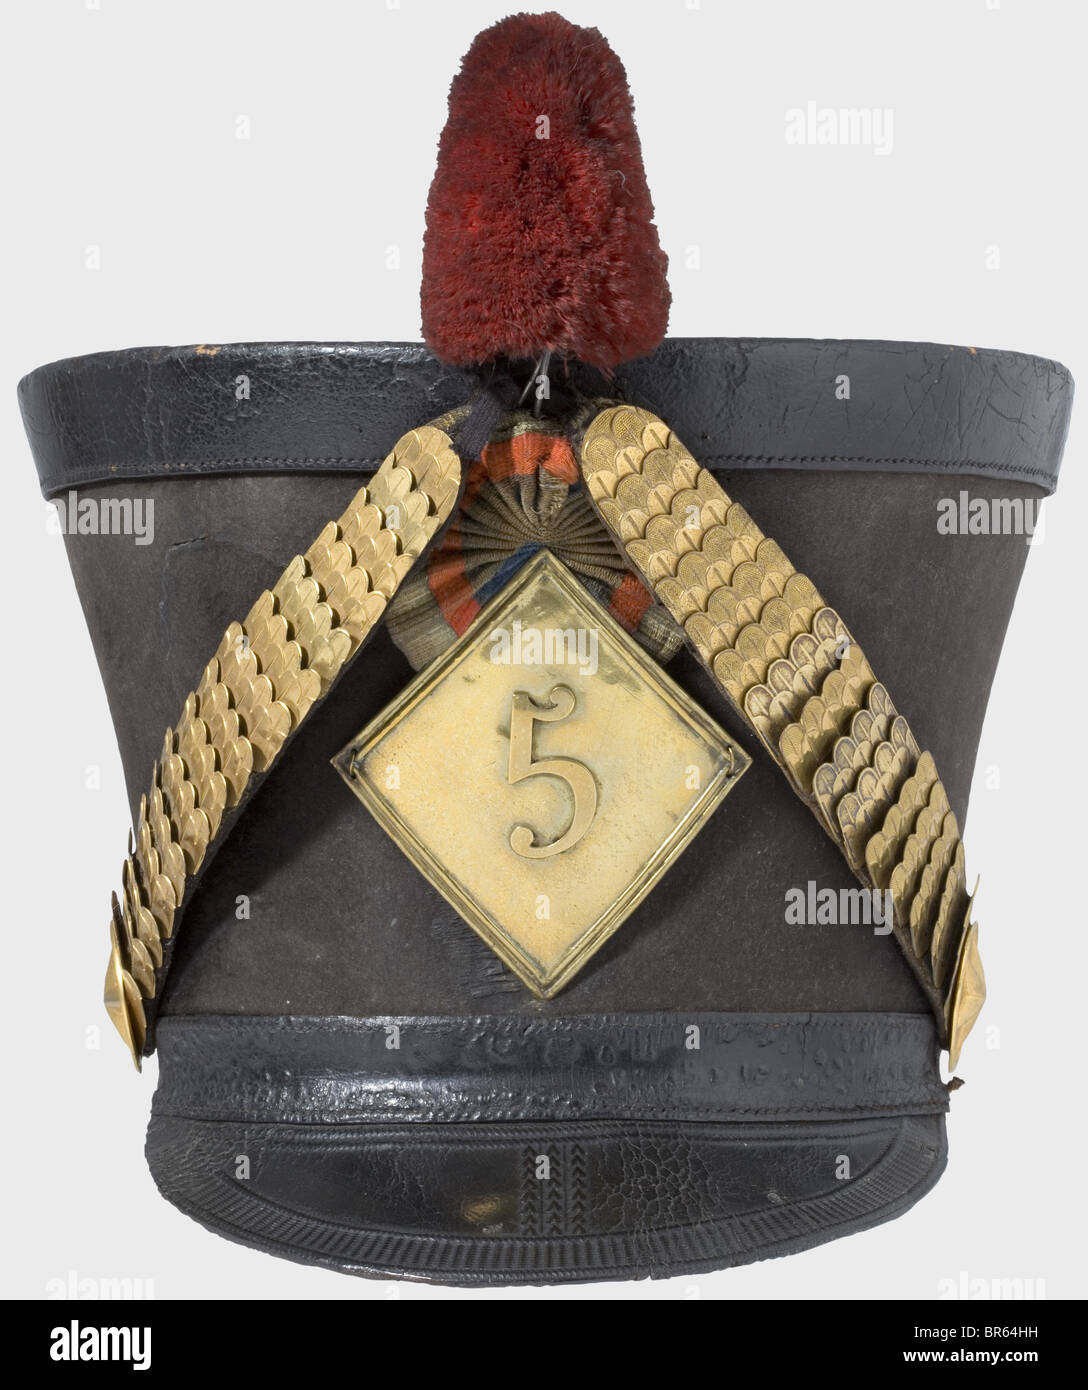 Ein Schako für Offiziere des 5. Hussaren-Regiments, gemäß der Verordnung von 1810. Großer, schwarzer Filzkörper (sichelförmige Rispe auf der Vorderseite). Verstellbares Kopfband und Visier aus schwarzem Leder mit Werkzeugschmuck. Blechchinskalen auf geprägten Sternrosetten. Rhomboidales, eingeprägtes Emblem gemäß der Verordnung von 1812 mit der Nummer "5". Lederkakade und Pflaume (Pompon fehlt). Leder-Sweatband und Leinenfutter. Band Leder und Sweatsband etwas gekappt. Alters- und Gebrauchsspuren. Das 5. Husaren-Regiment kämpfte in folgenden Gefechten: Eylau, Stockfoto